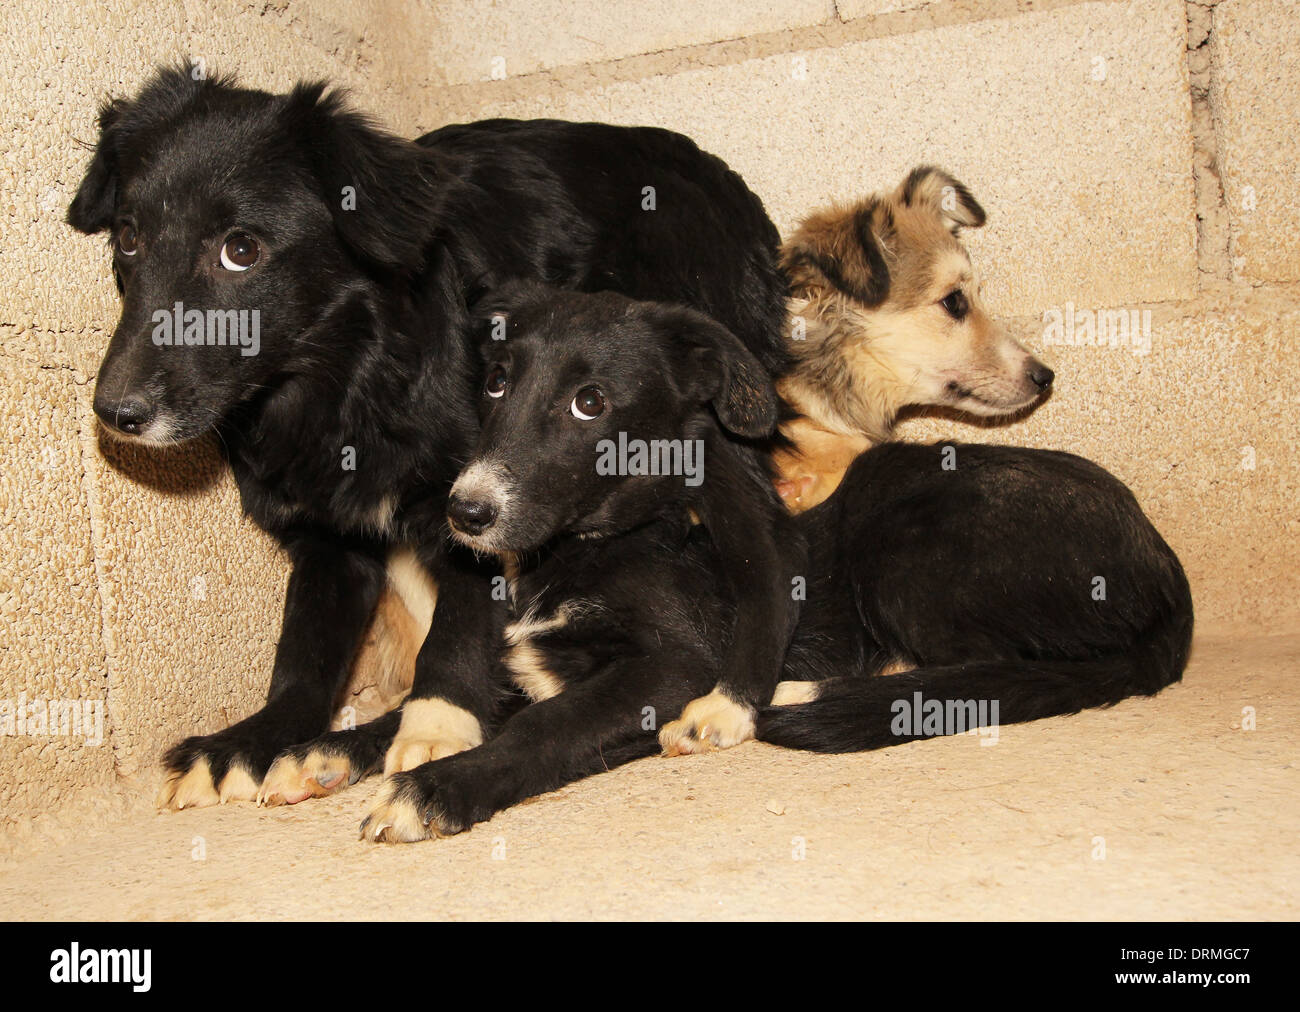 Rescate de cachorros en la camada Allymo perreras, Corvera, Murcia, España  Fotografía por Tony Henshaw Fotografía de stock - Alamy